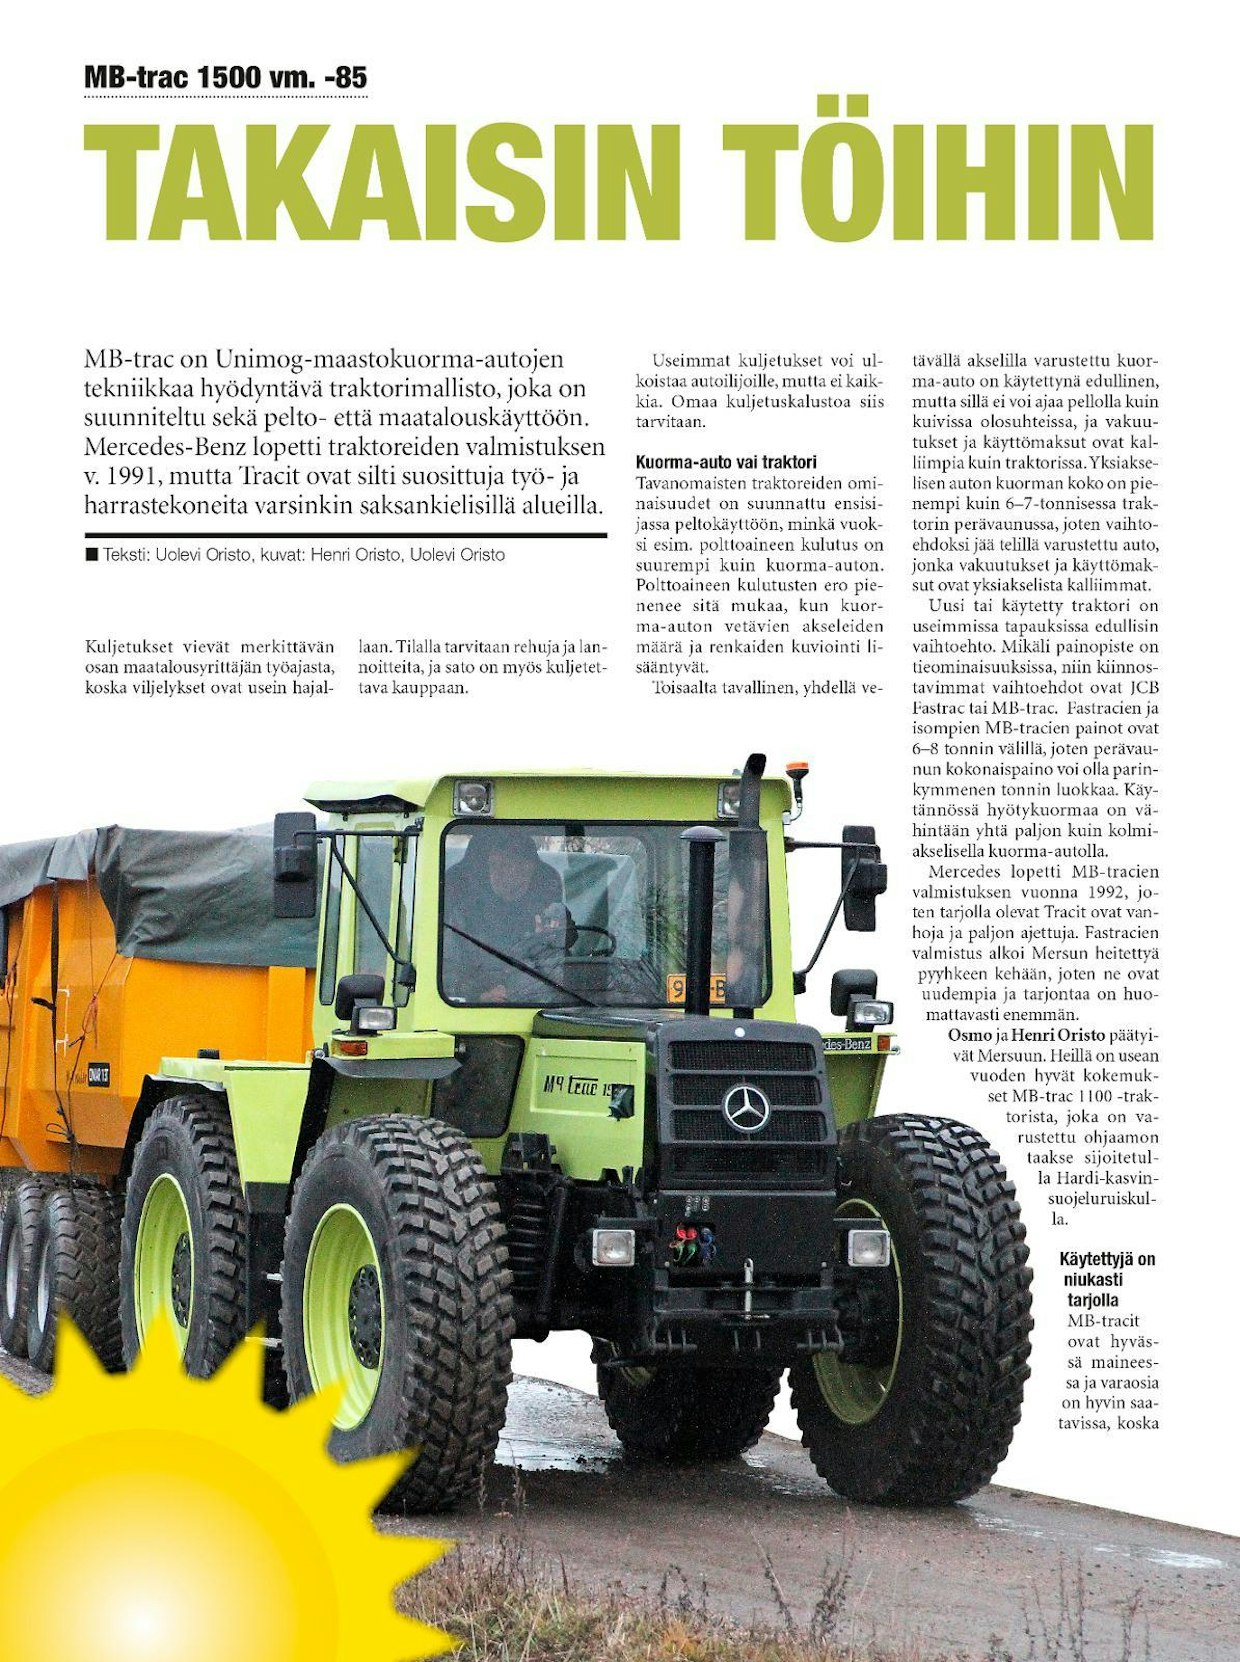 KV 8/2018 -lehdessä esittelimme projektikertomuksen vuosimallin 1985 MB-trac-traktorin kunnostuksesta takaisin käyttökuntoon.